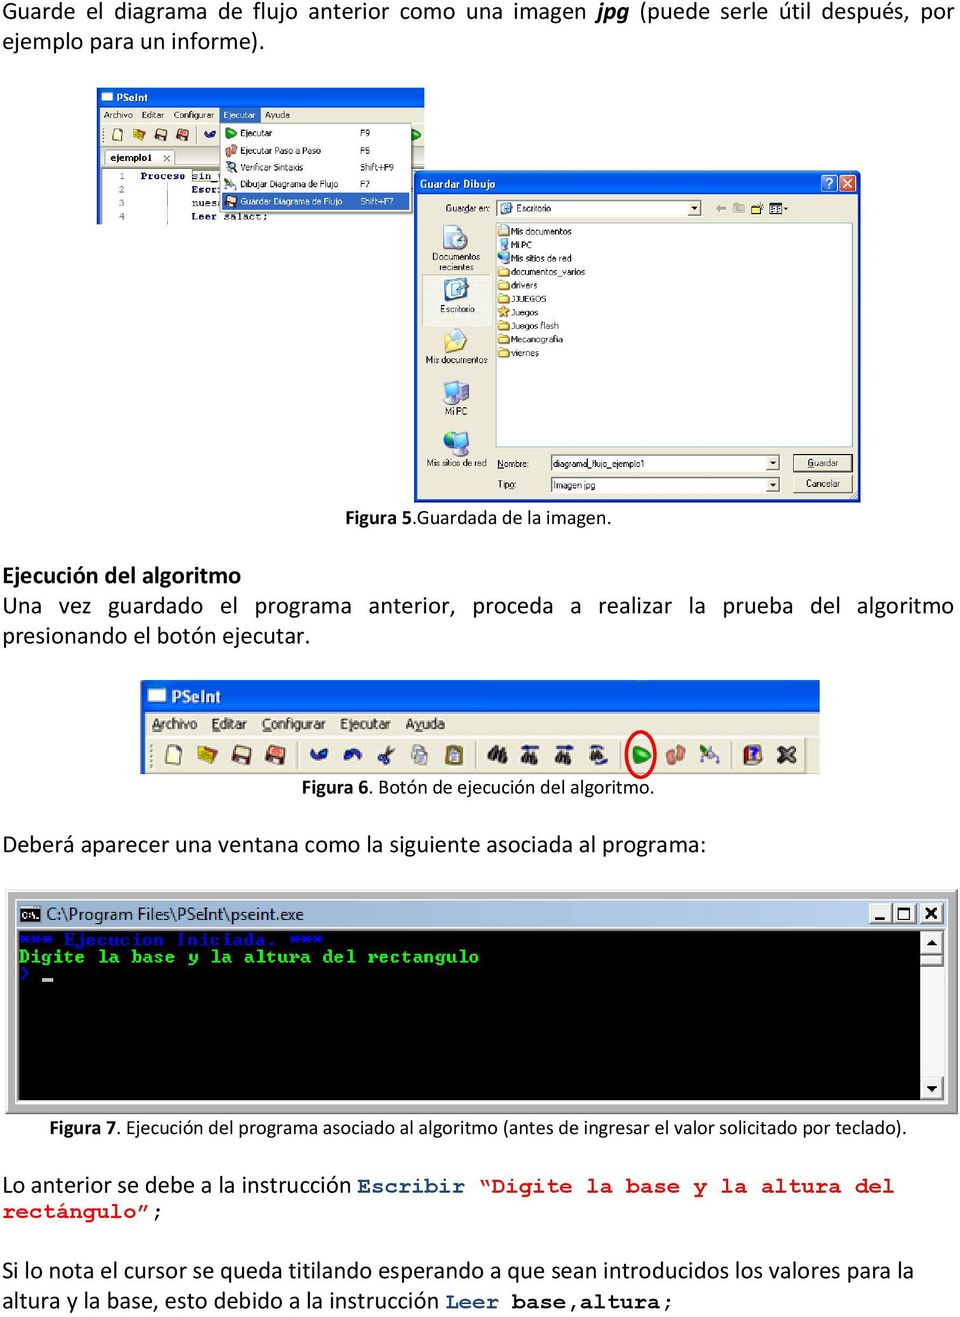 Deberá aparecer una ventana como la siguiente asociada al programa: Figura 7. Ejecución del programa asociado al algoritmo (antes de ingresar el valor solicitado por teclado).